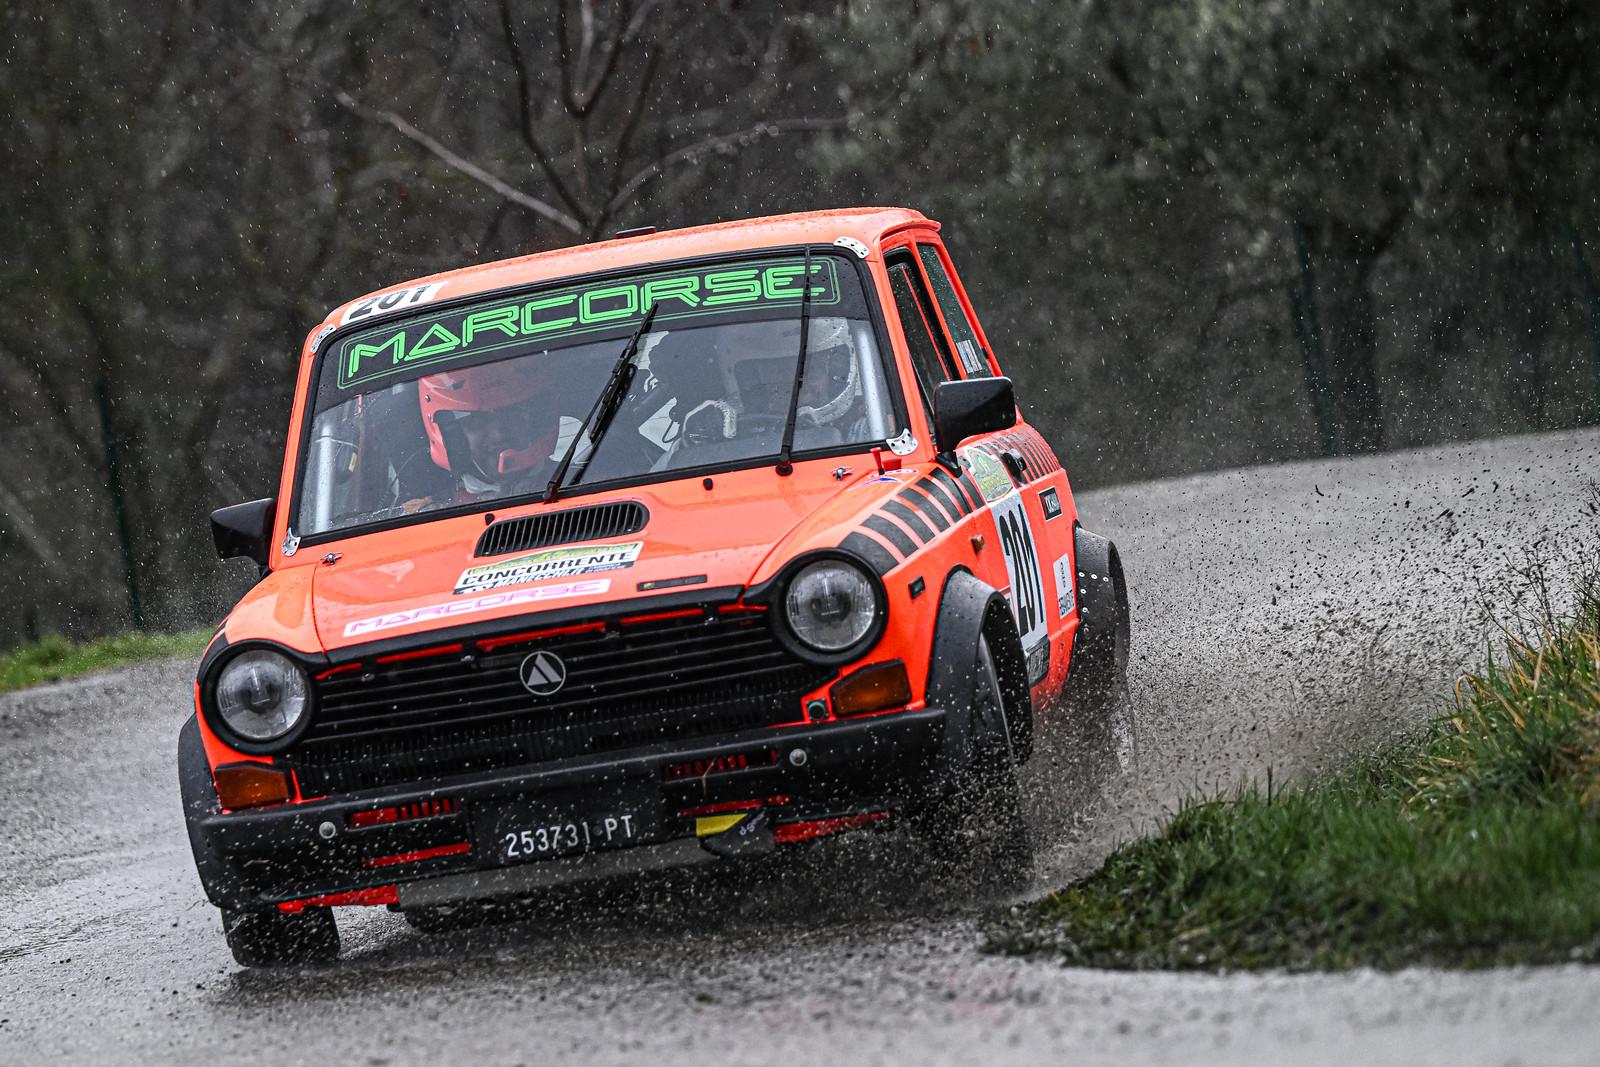 Trionfo nella pioggia al 14° Rally delle Vallate Aretine: Dall’Avo e Piras vincono il Trofeo Autobianchi A112 Abarth.